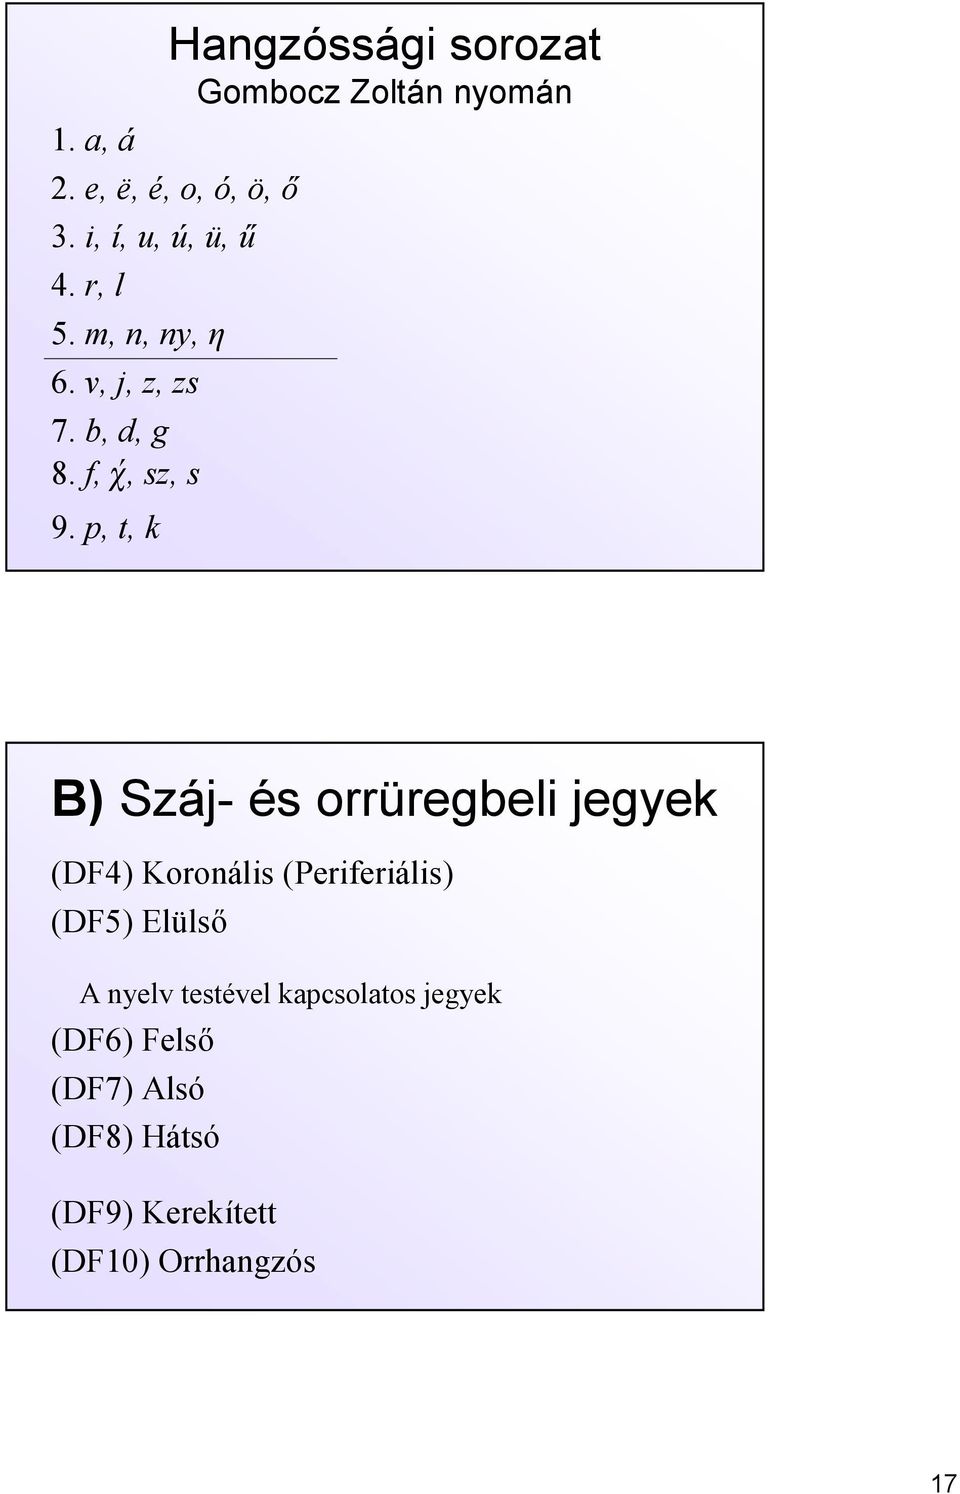 p, t, k B) Száj és orrüregbeli jegyek (DF4) Koronális (Periferiális) (DF5) Elülső A